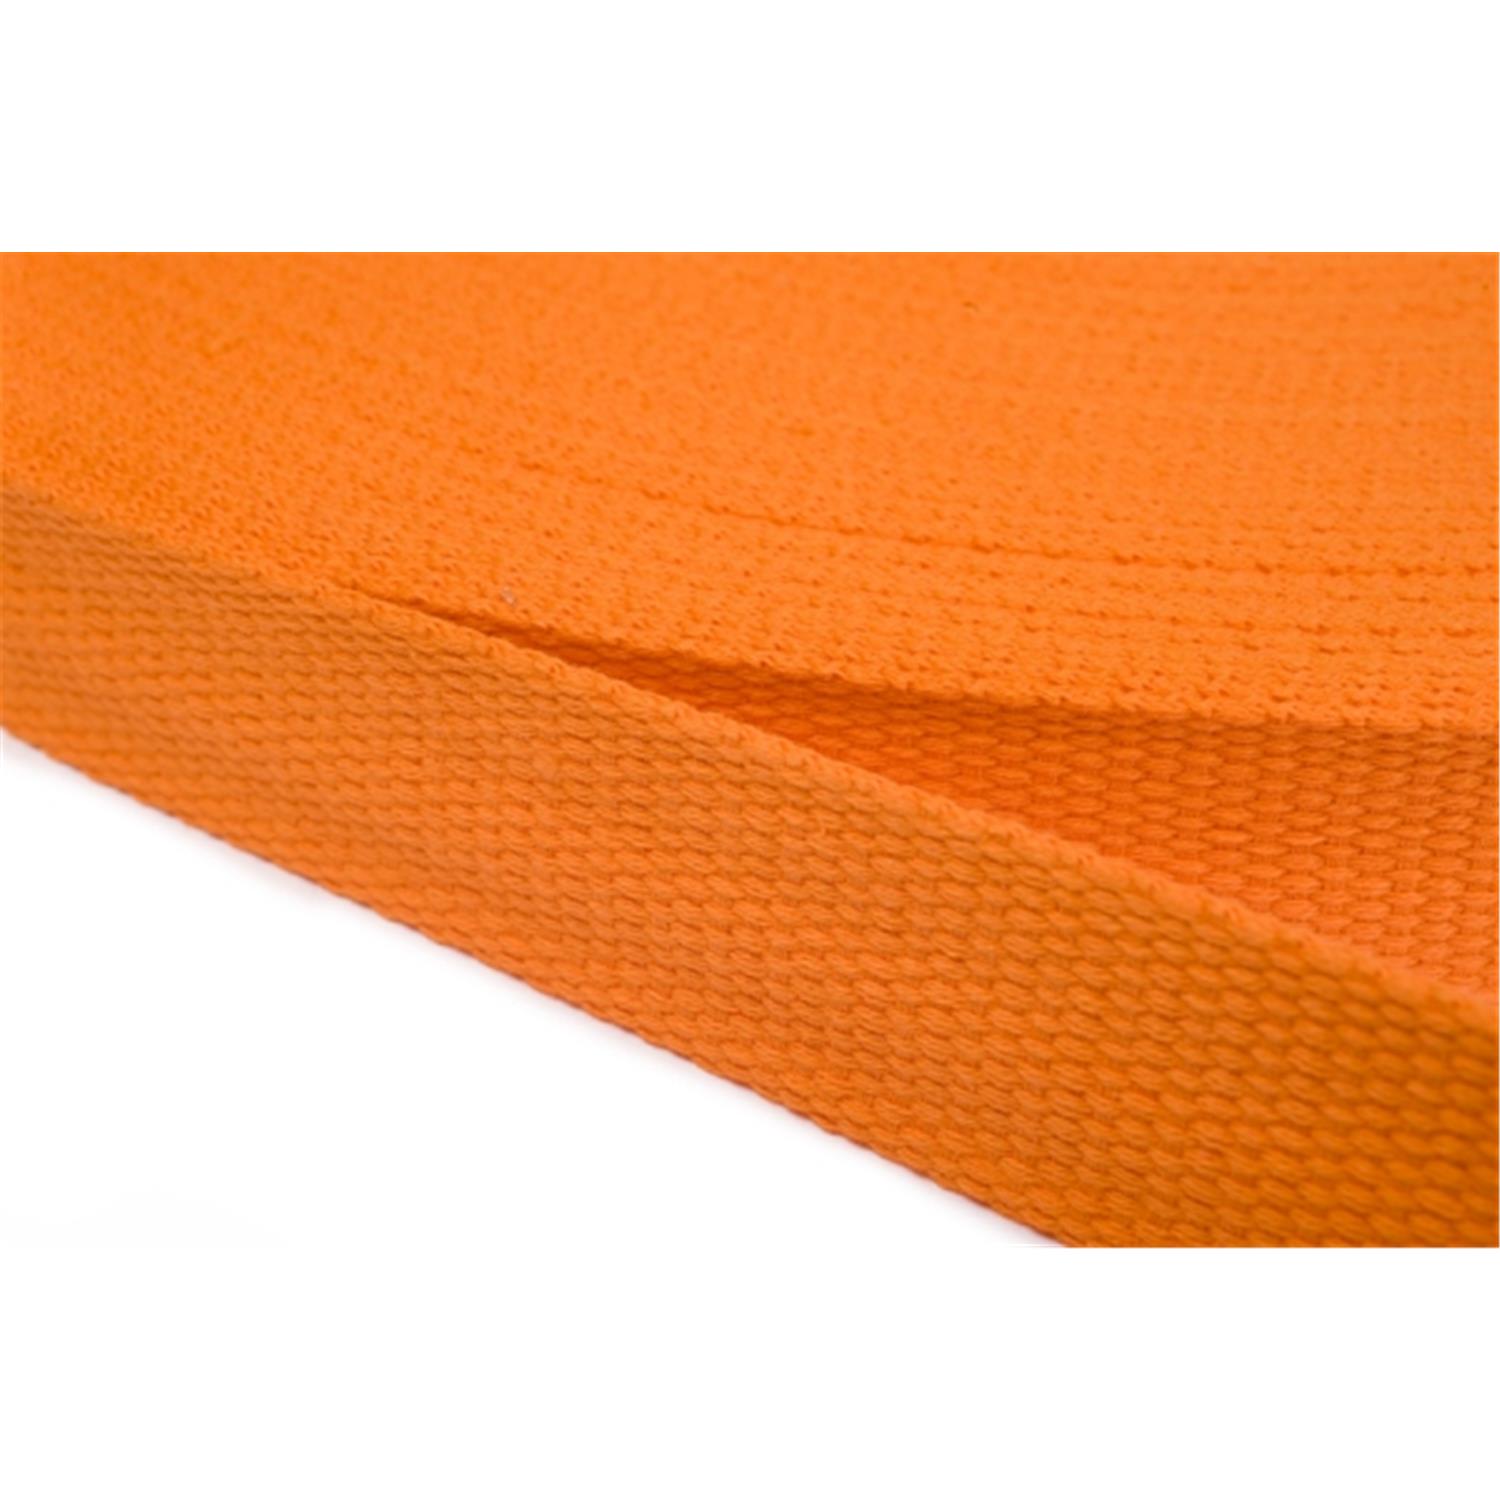 Gurtband aus Baumwolle 30mm in 20 Farben 06 - orange 6 Meter